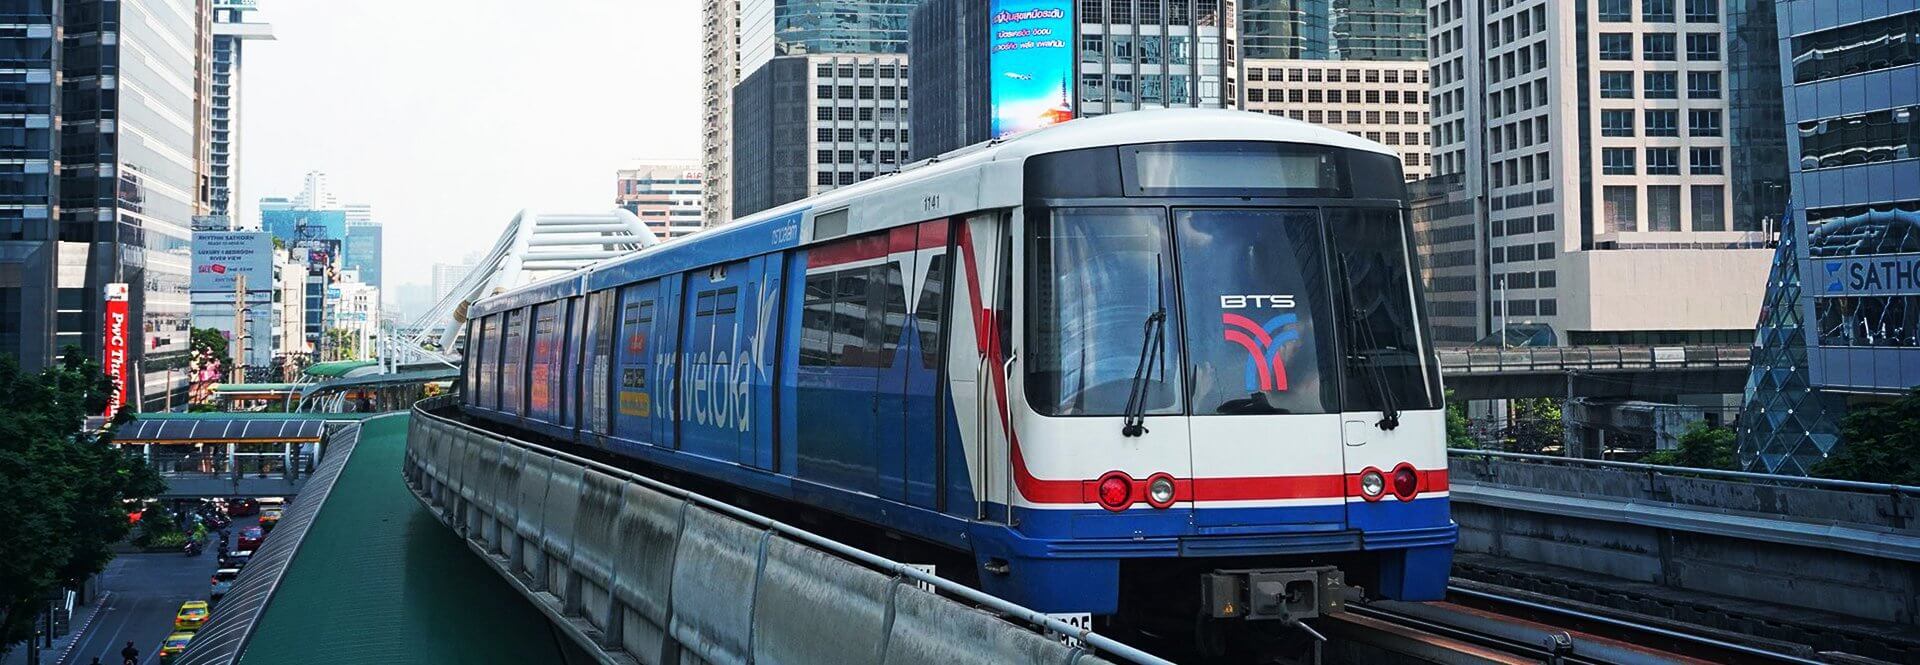 คอนโดติดรถไฟฟ้า BTS - MRT